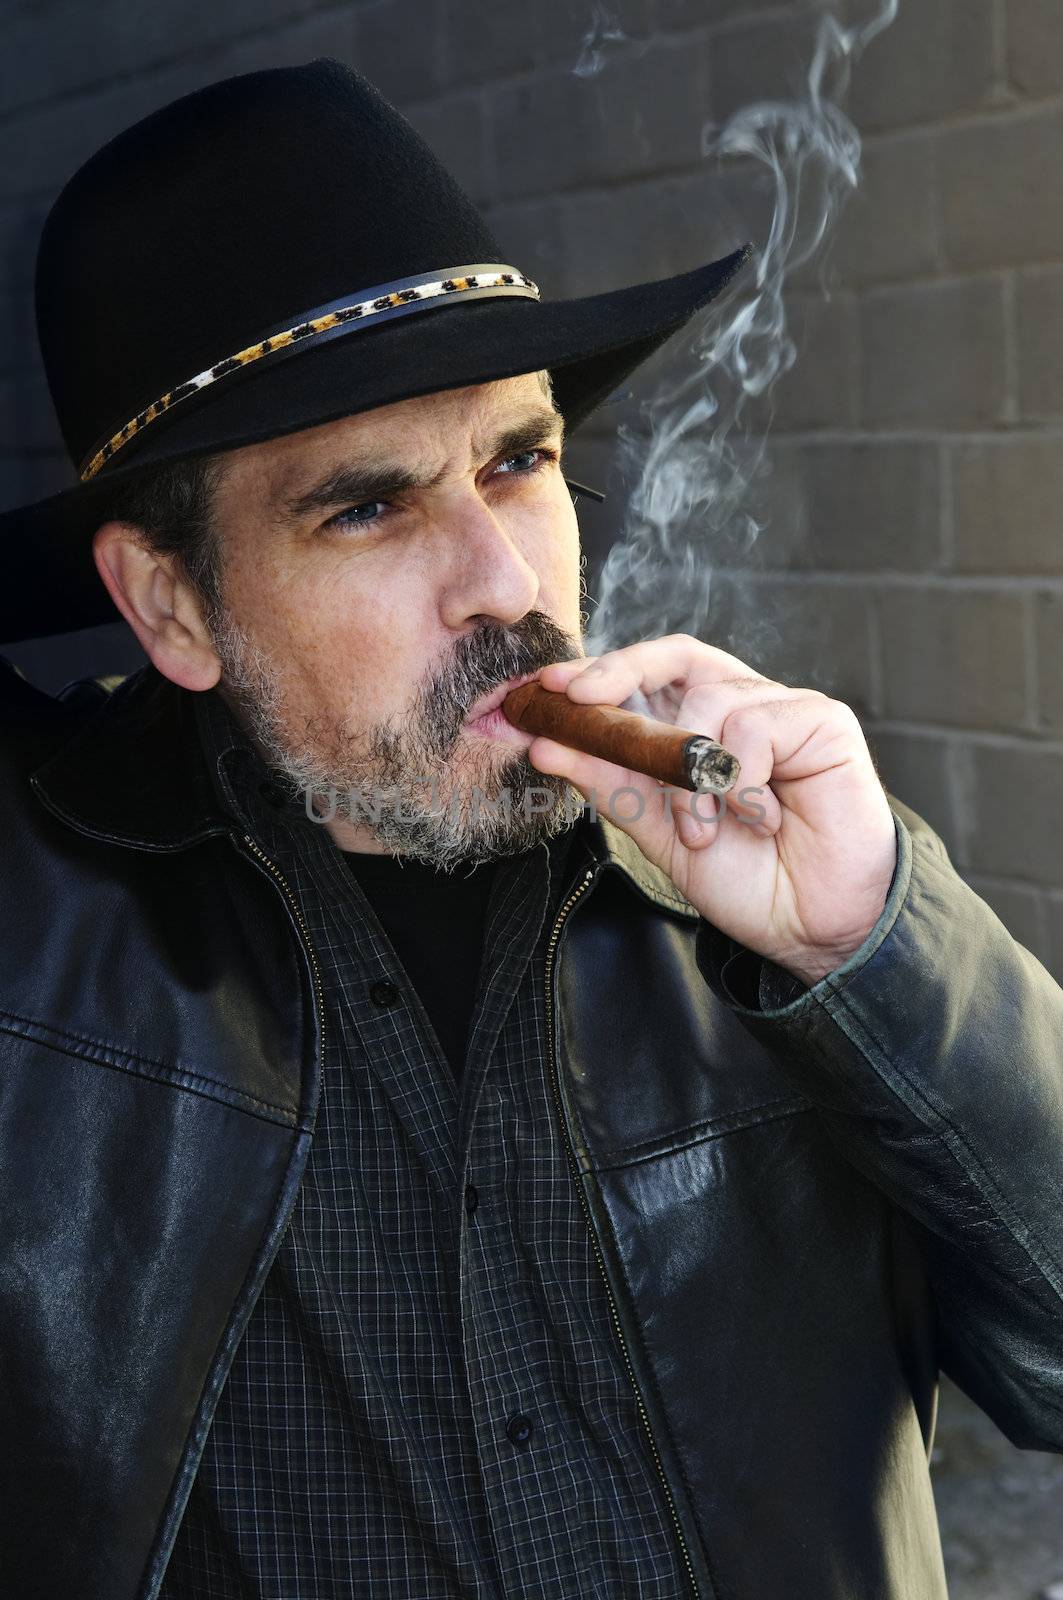 Man with beard in cowboy hat smoking cigar